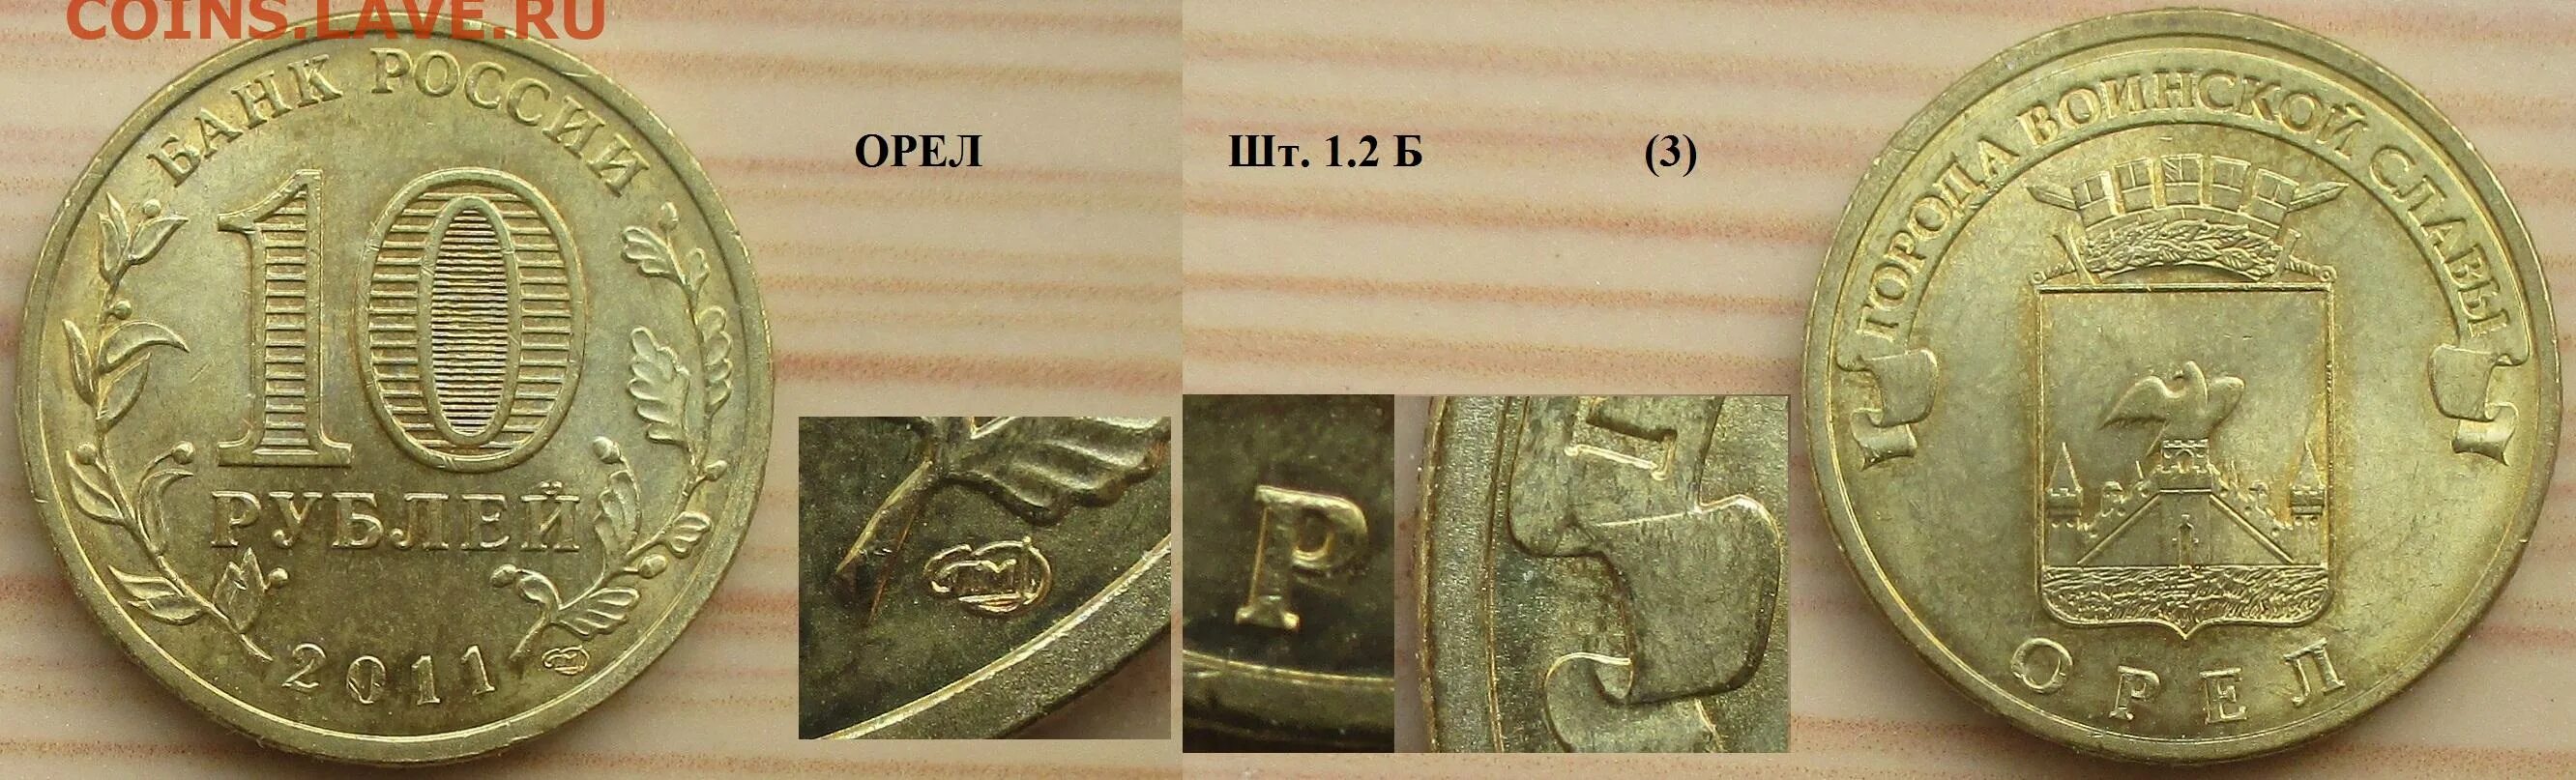 Монеты россия 2011